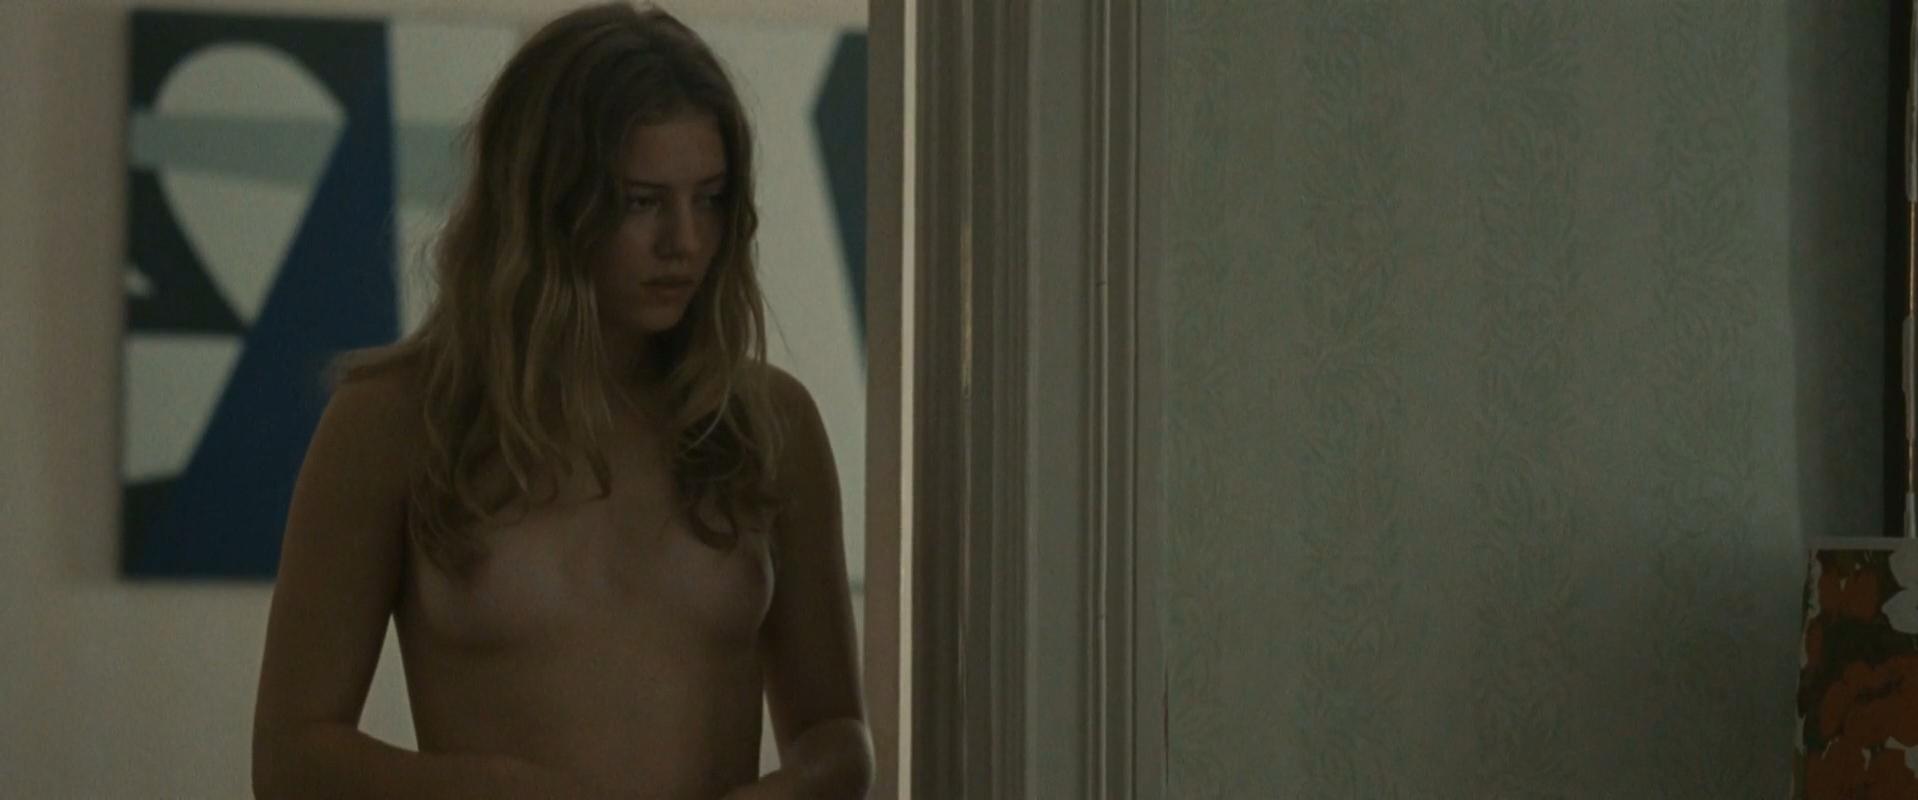 Nude Video Celebs Josefin Asplund Nude Sofia Karemyr Nude Call Girl